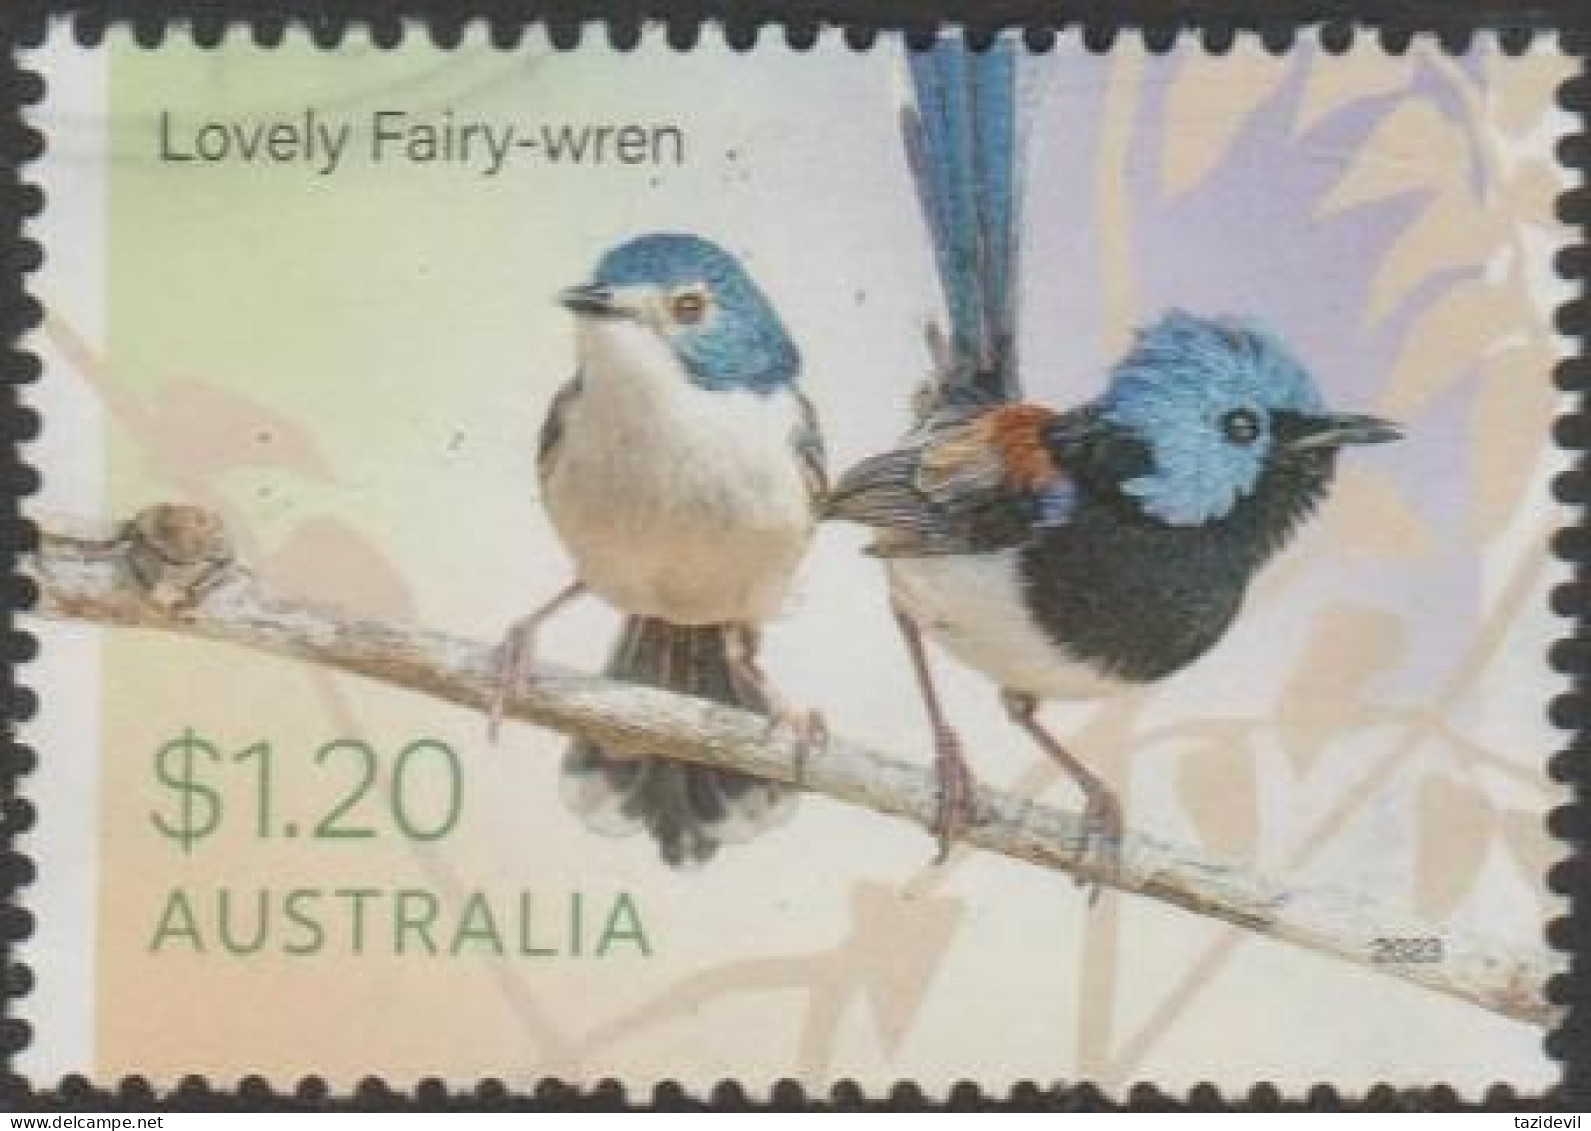 AUSTRALIA - USED 2023 $1.20 Fairy-Wrens - Lovely Fairy-Wren - Used Stamps